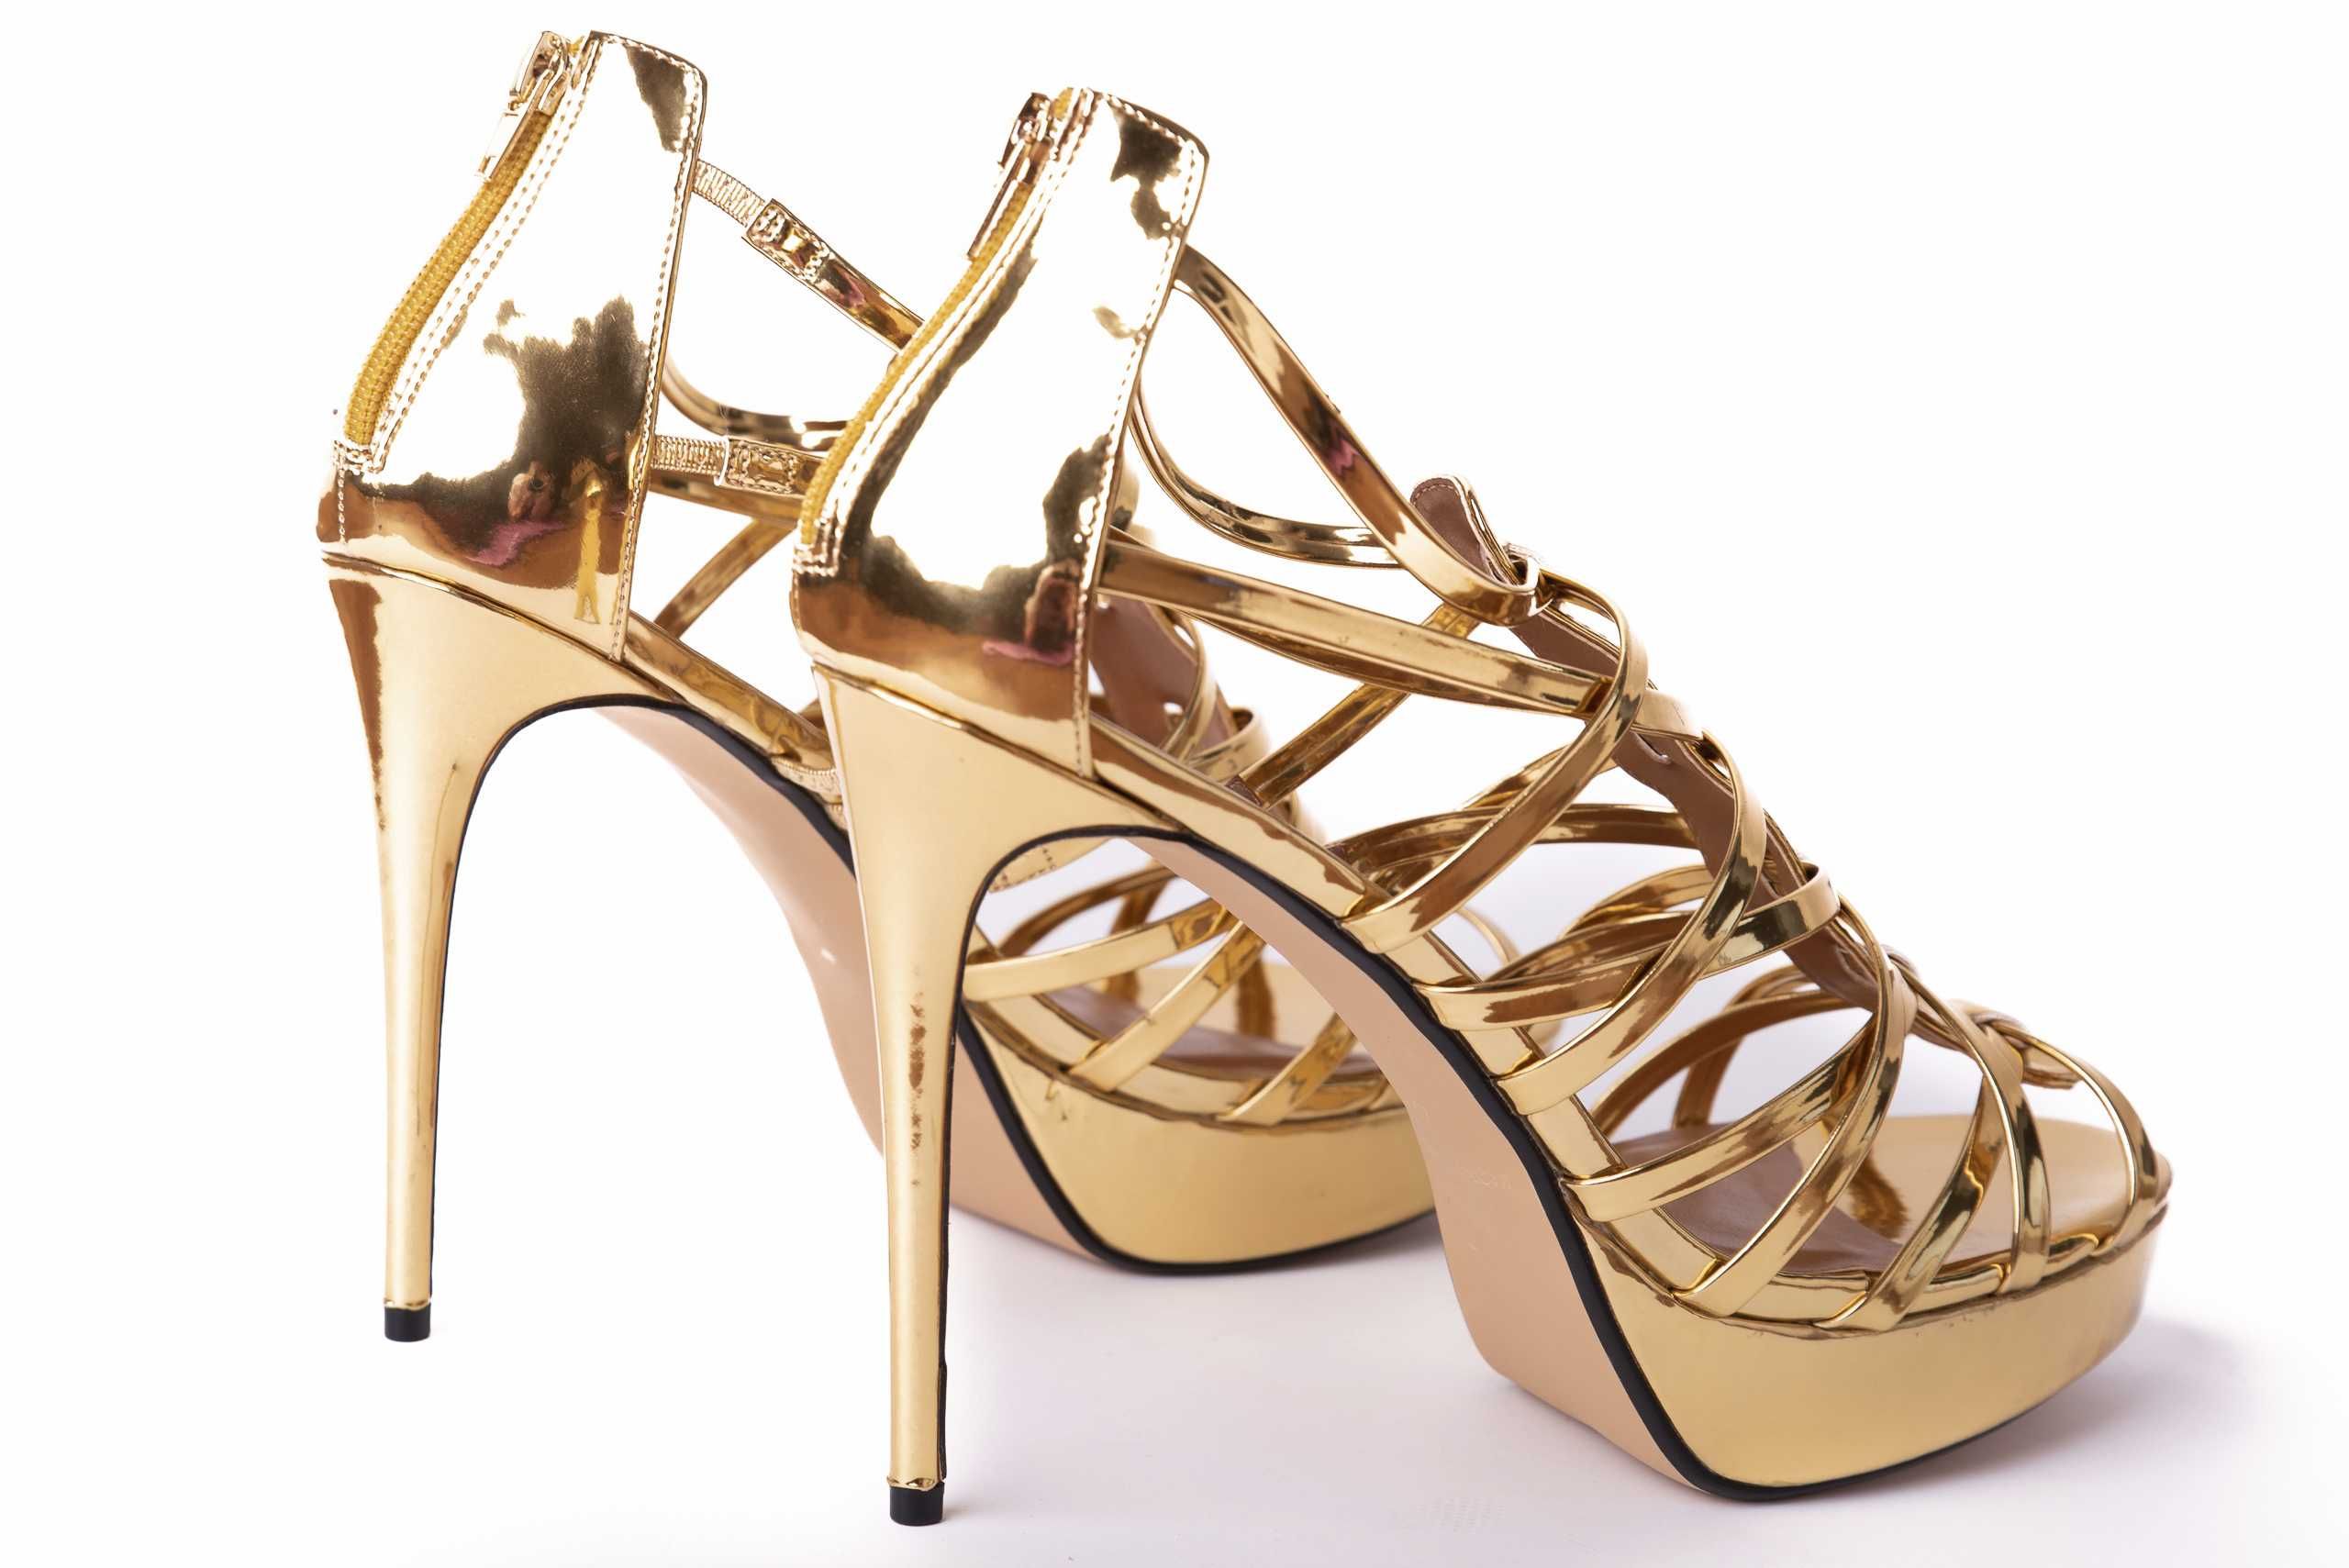 Buty złote wysokie erotyczne na obcasie szpilki 44 paski